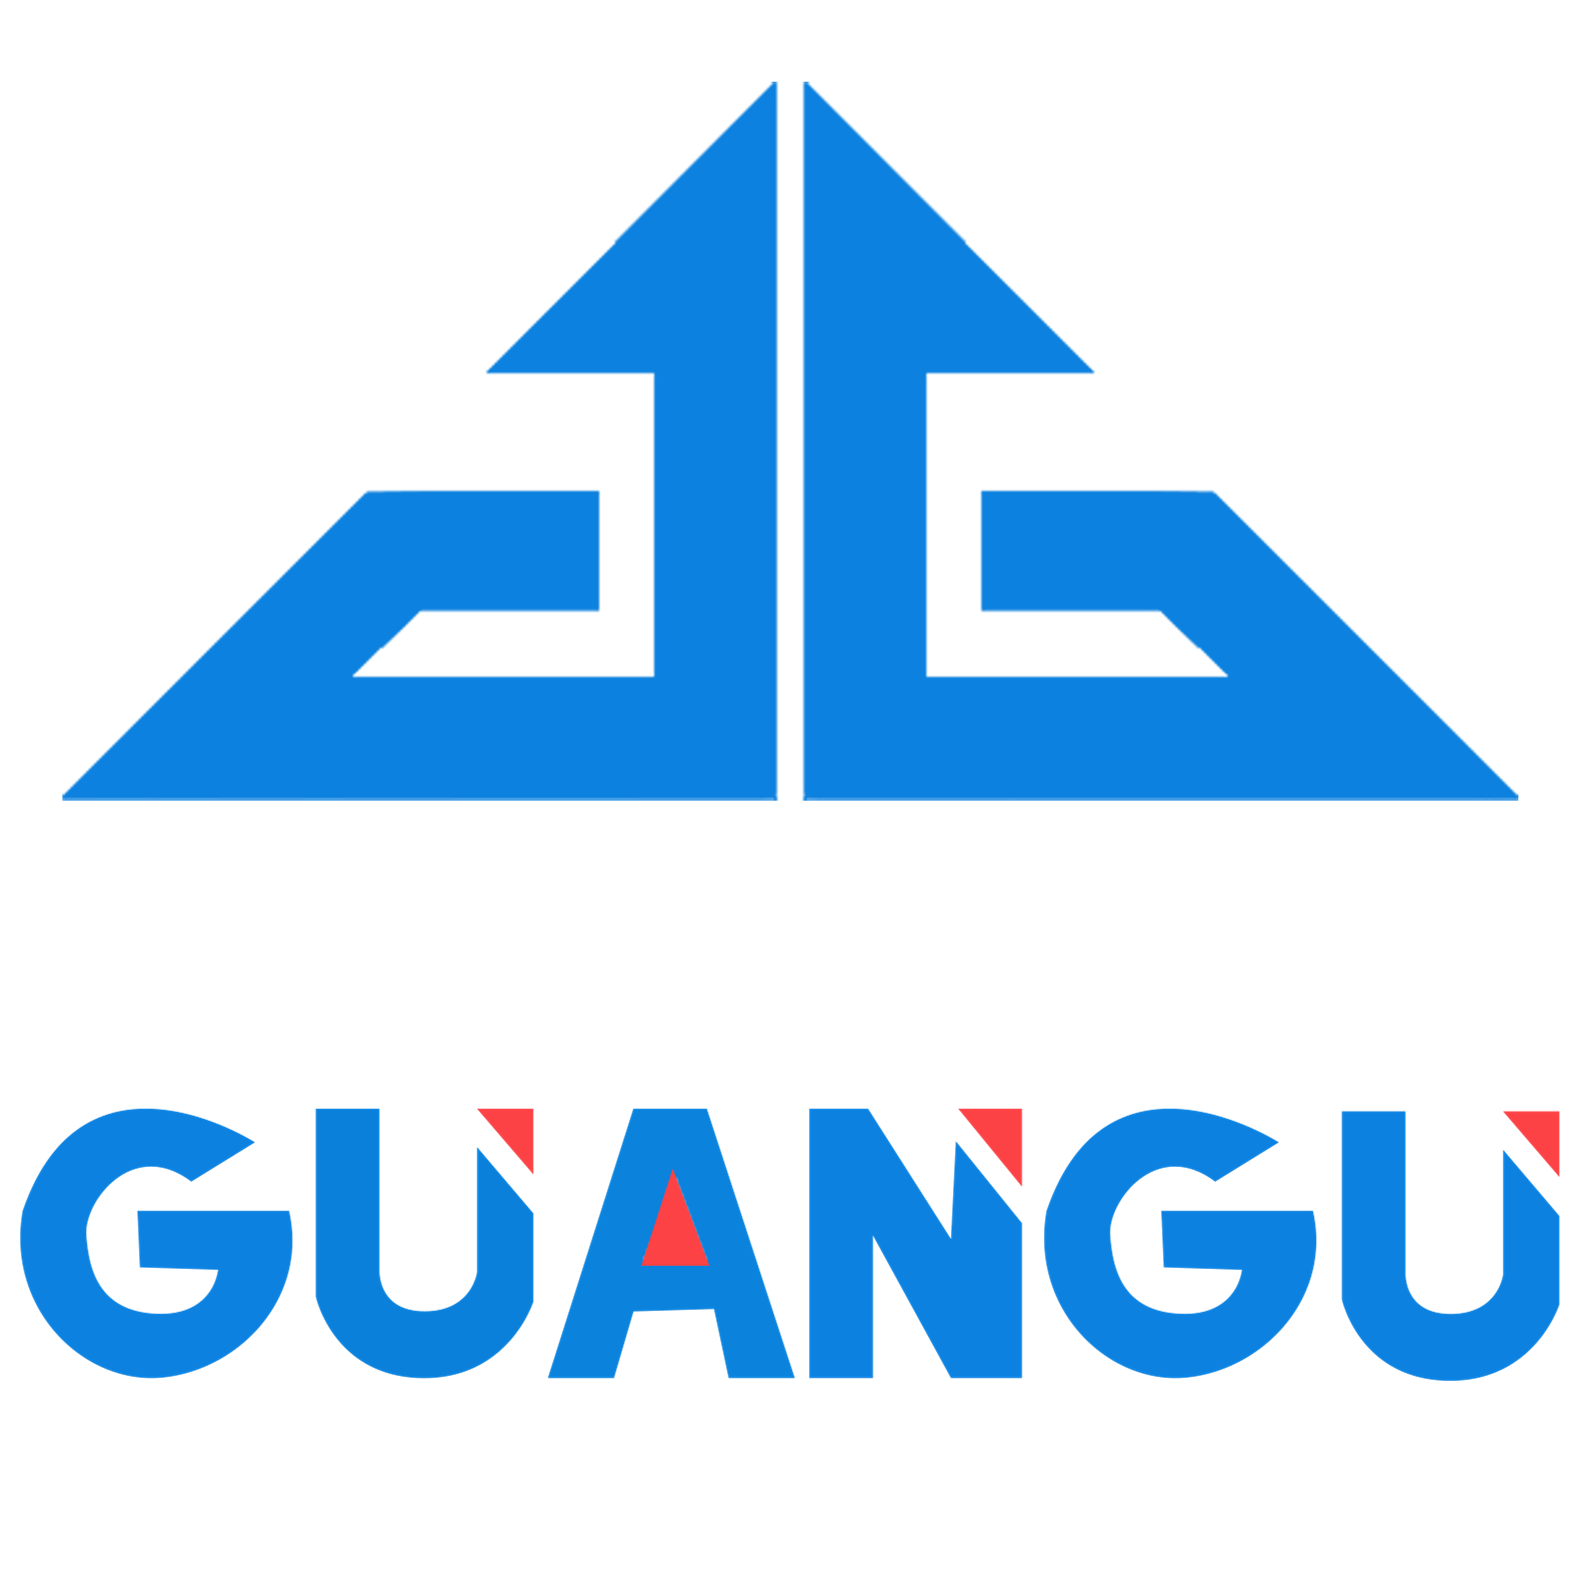 EcuadorGuangu Tech